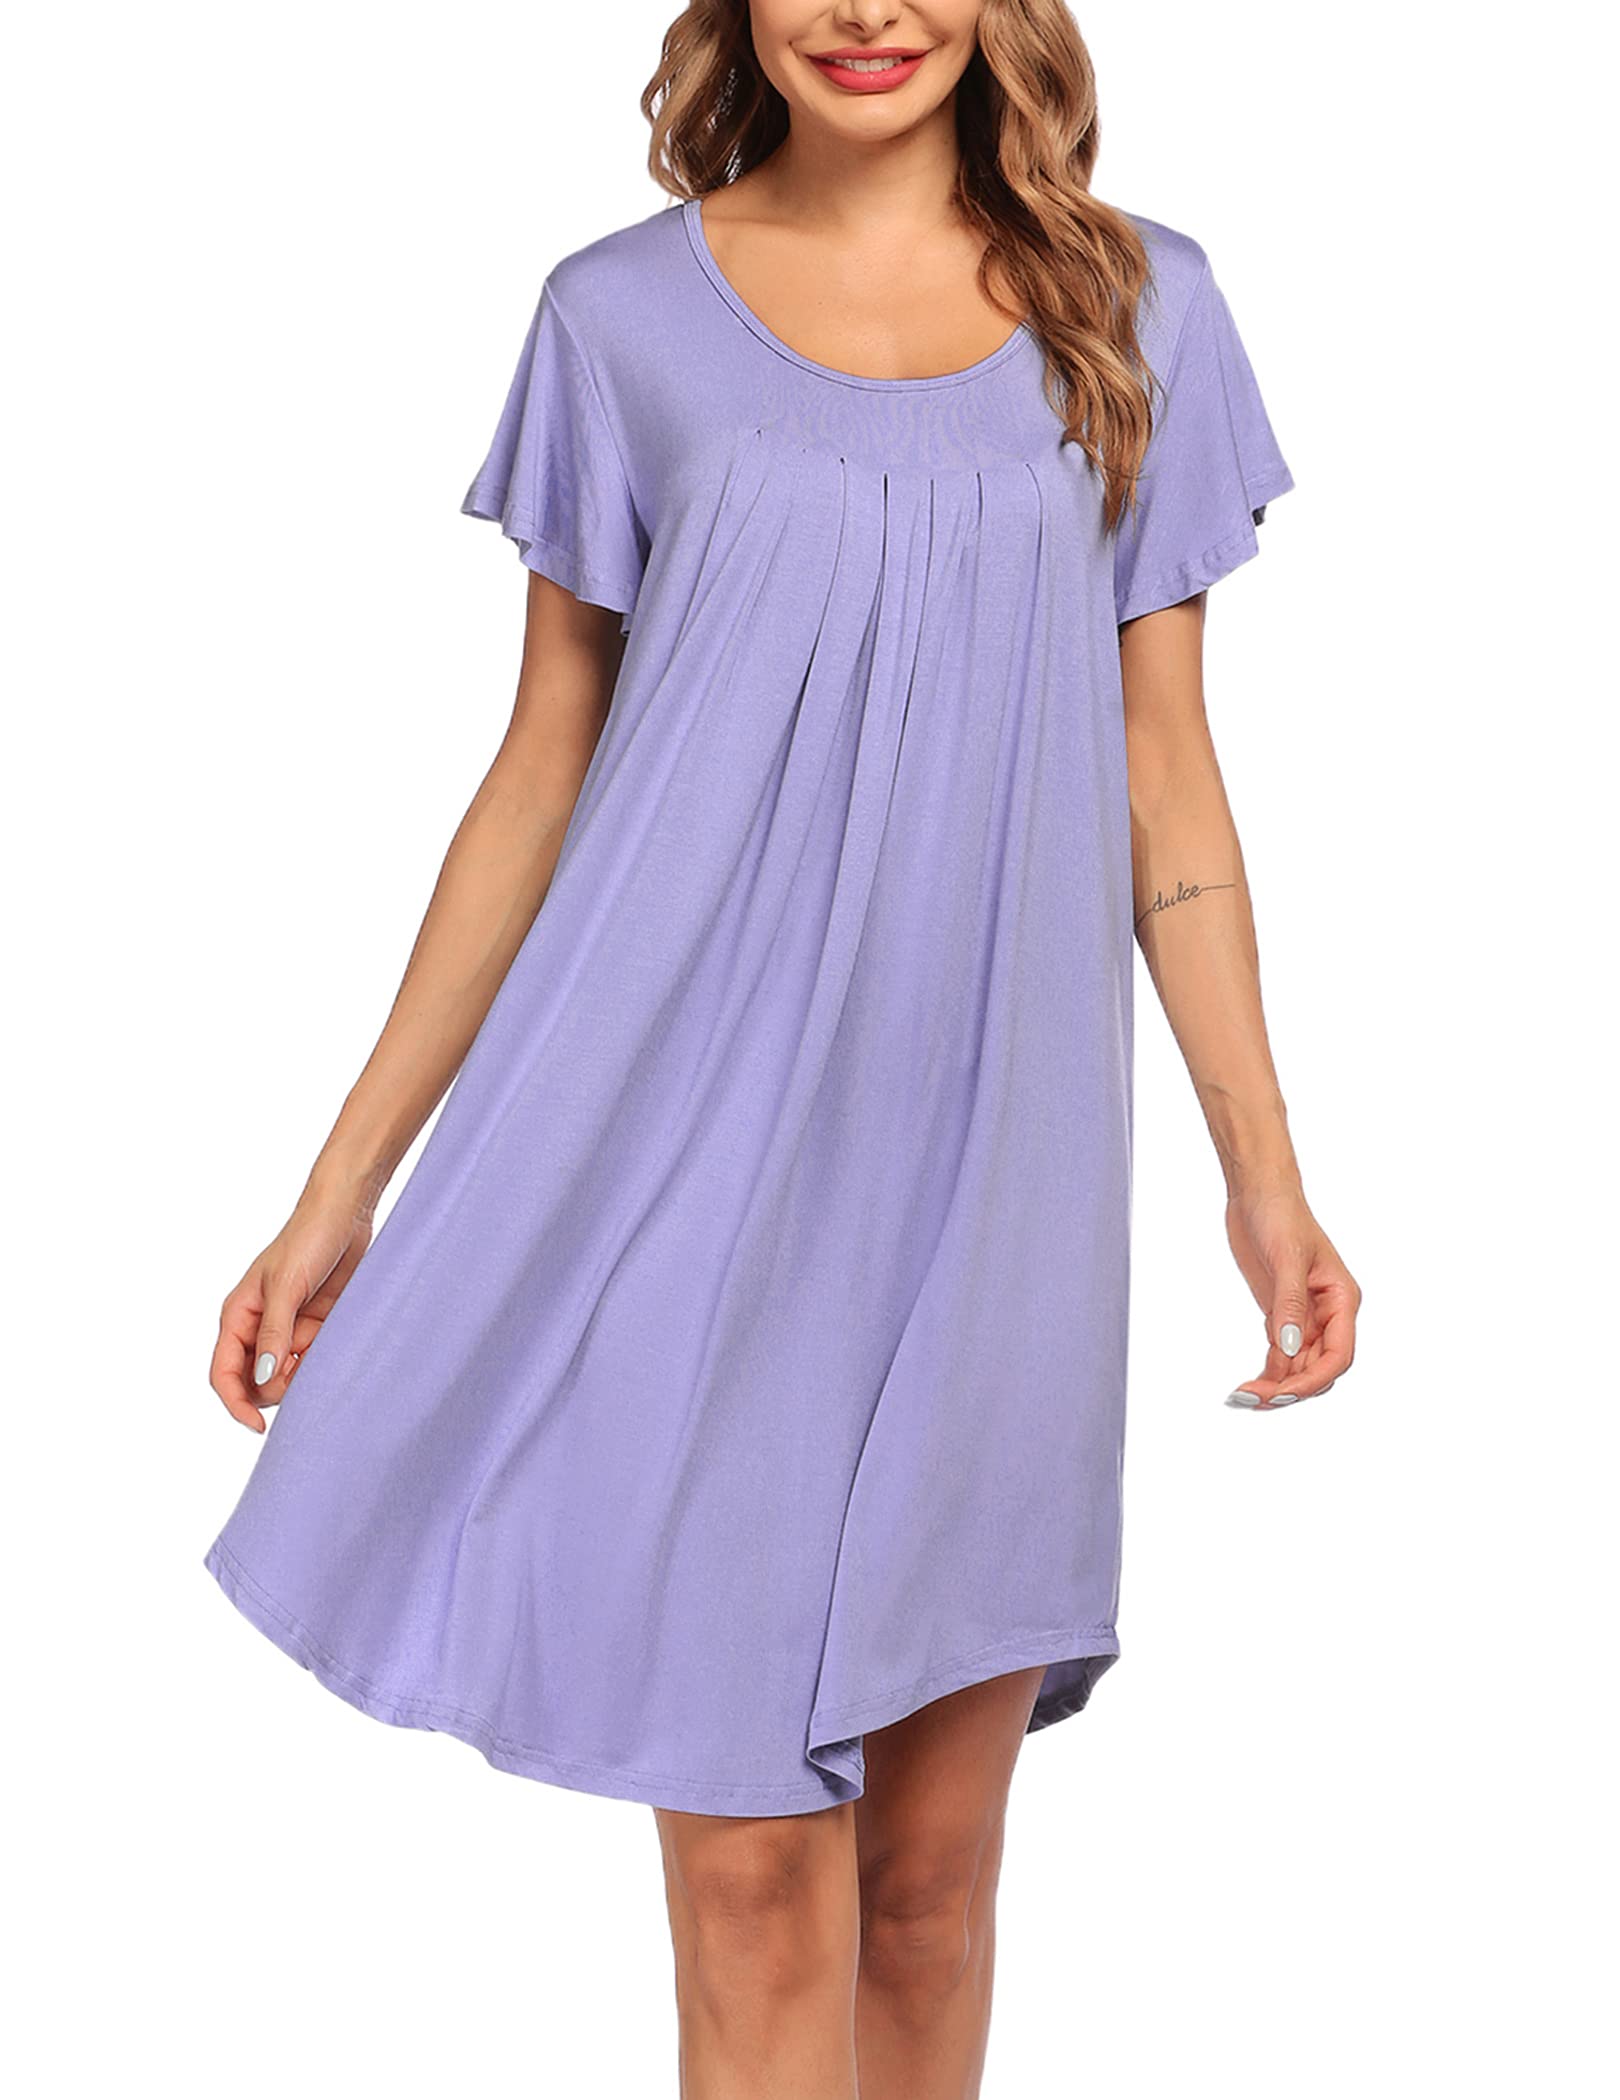 Эмэгтэй унтлагын цамц Зөөлөн унтлагын хувцас (47)